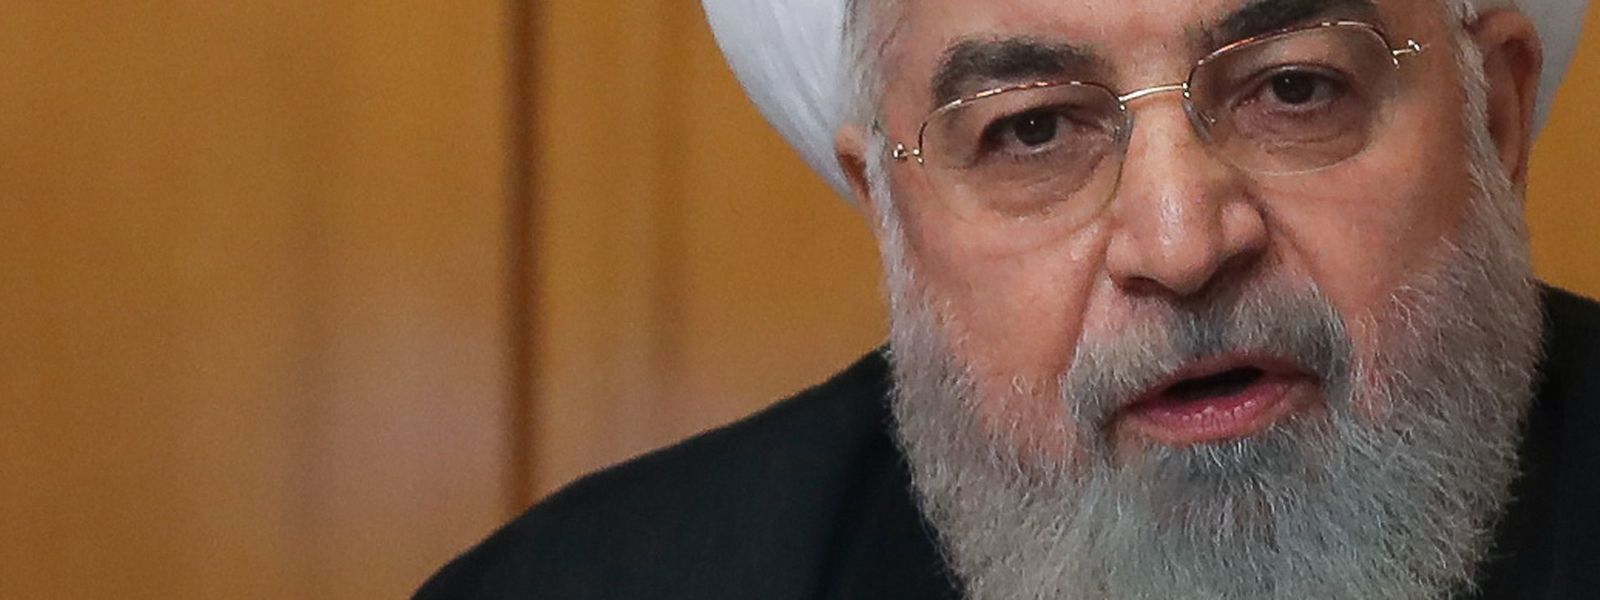 Dieses vom Büro des iranischen Präsidenten zur Verfügung gestellte Bild zeigt Hassan Ruhani, Präsident des Iran, während er in einer Kabinettssitzung spricht.